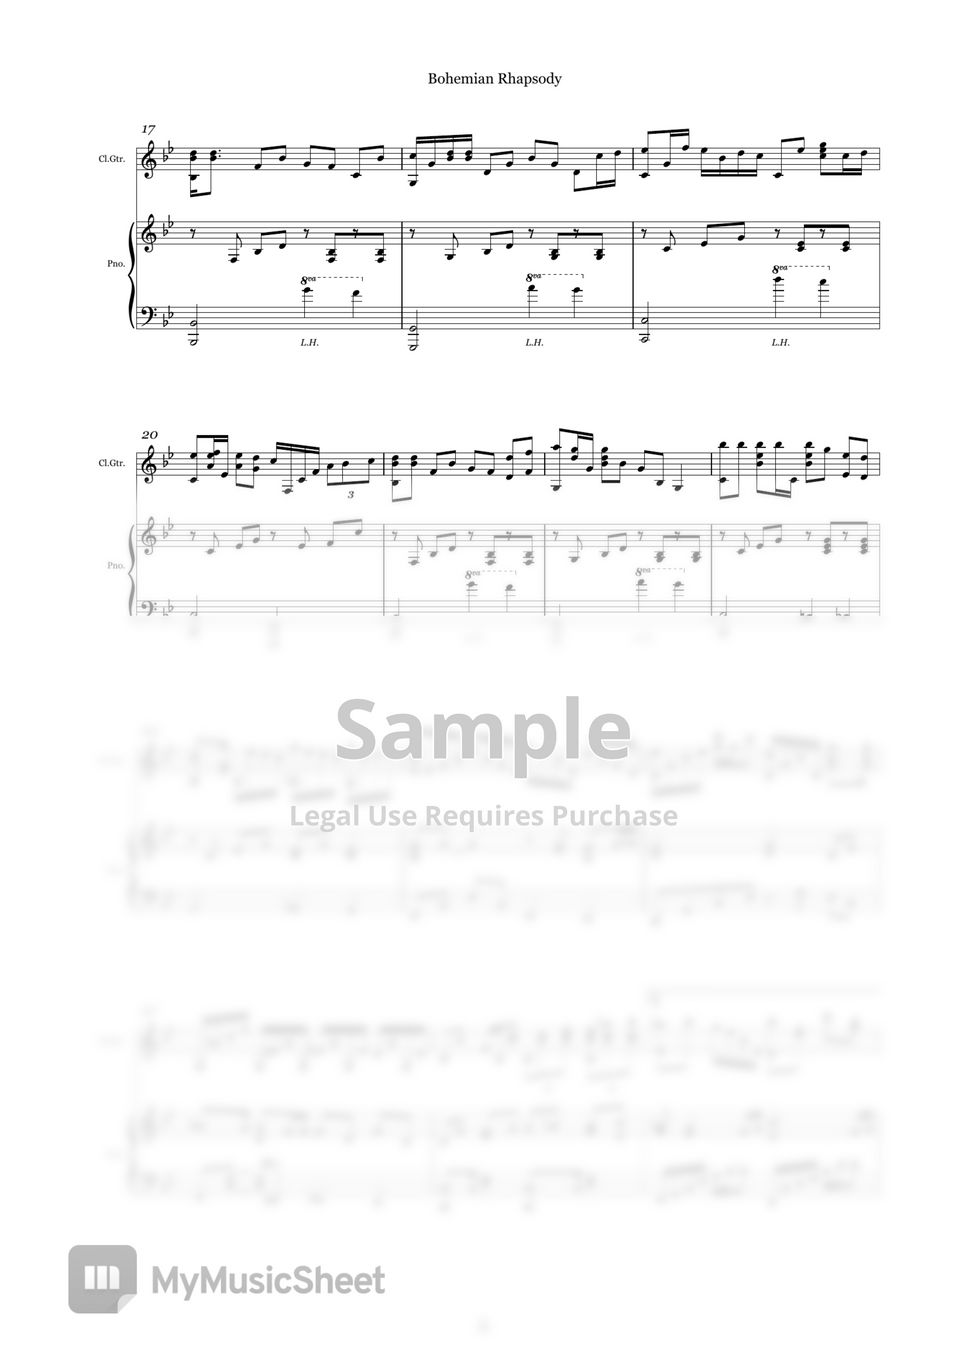 Queen - Bohemian Rhapsody (Guitar+Piano Duet Sheet Music, Standard Tuning) by D.Petrova (Edora)